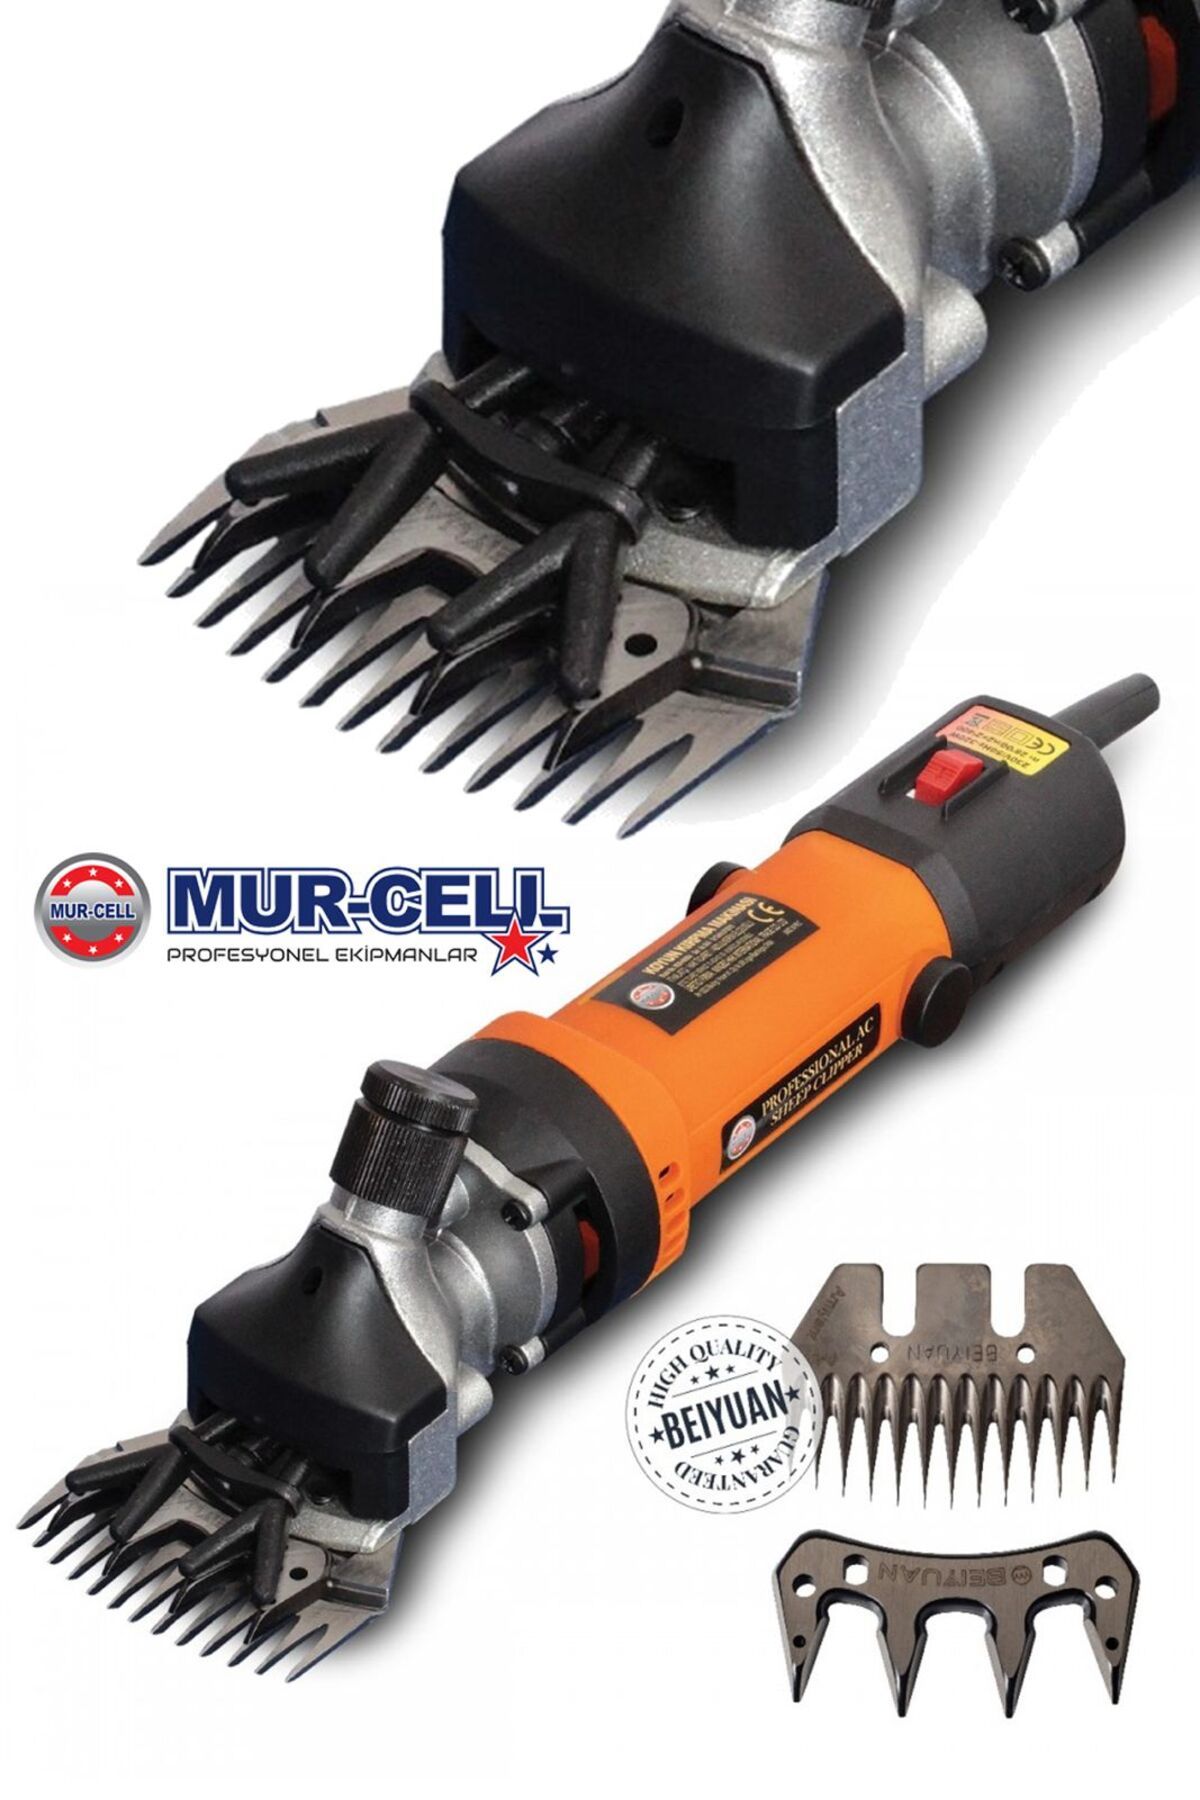 Mur-Cell MUR-CEL Seri Metal Şanzuman Seri Kullanım 2400Wf Koyun Keçi Lama Kırpma Makinesi Isınmaz Ürün